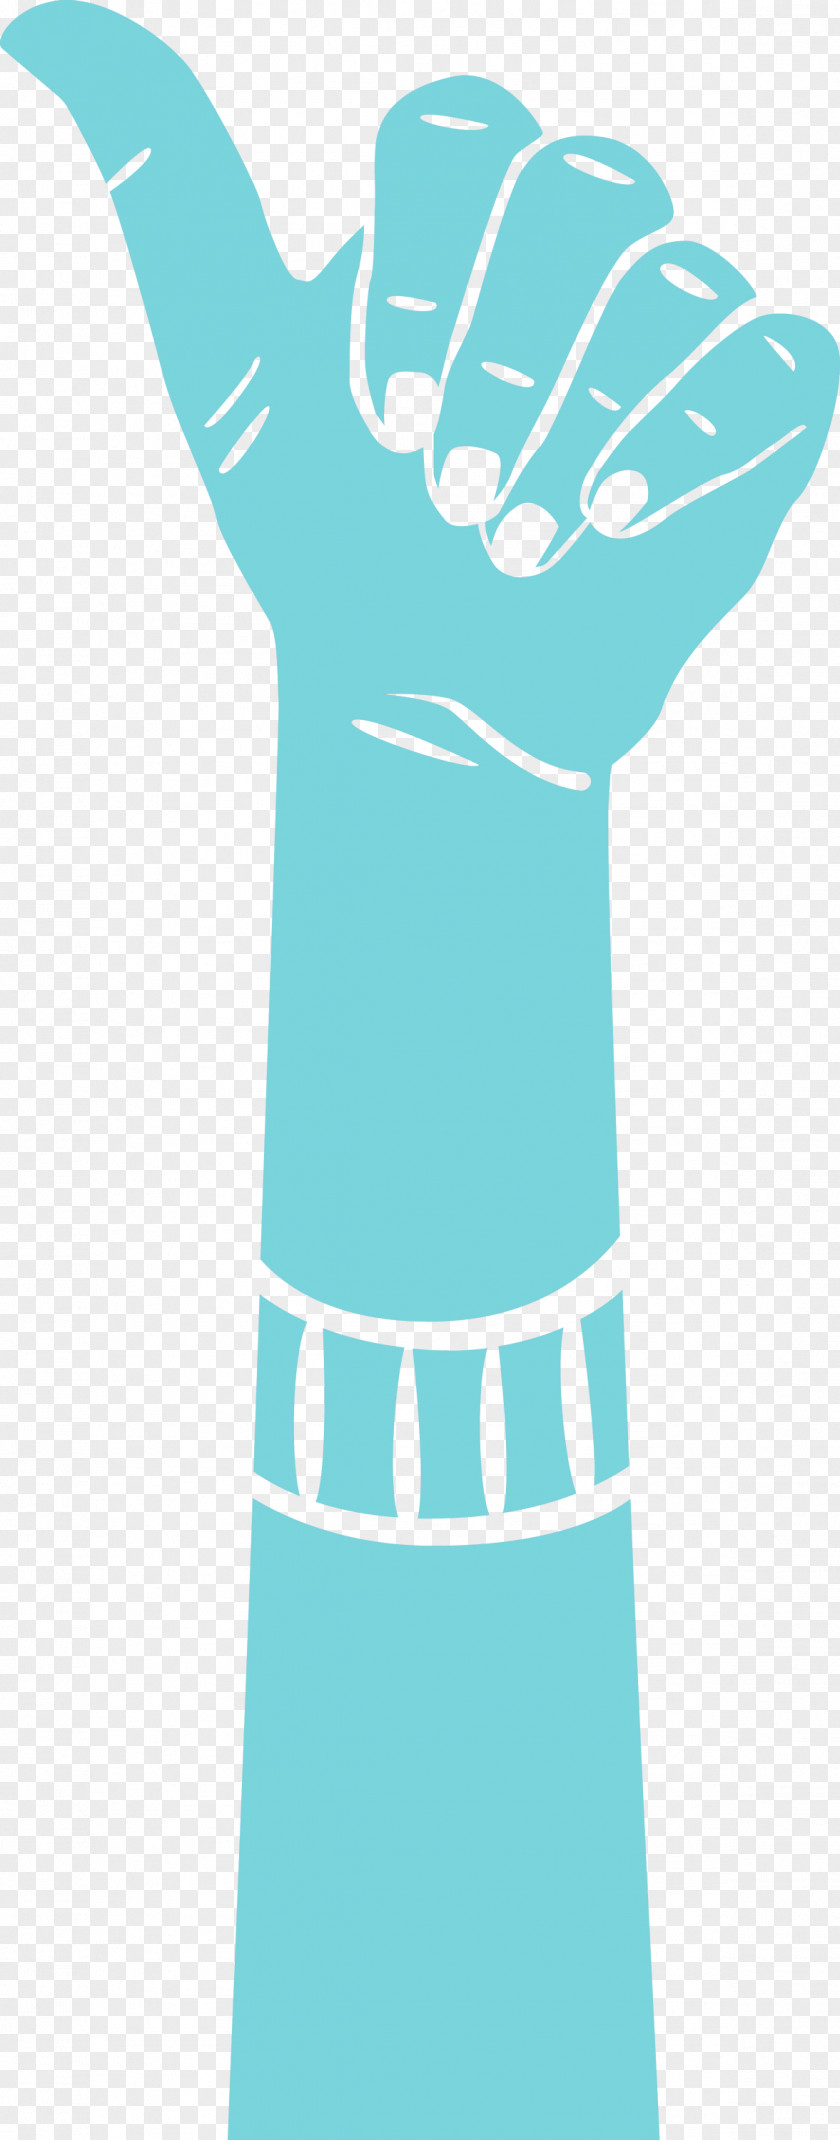 Hand Finger PNG